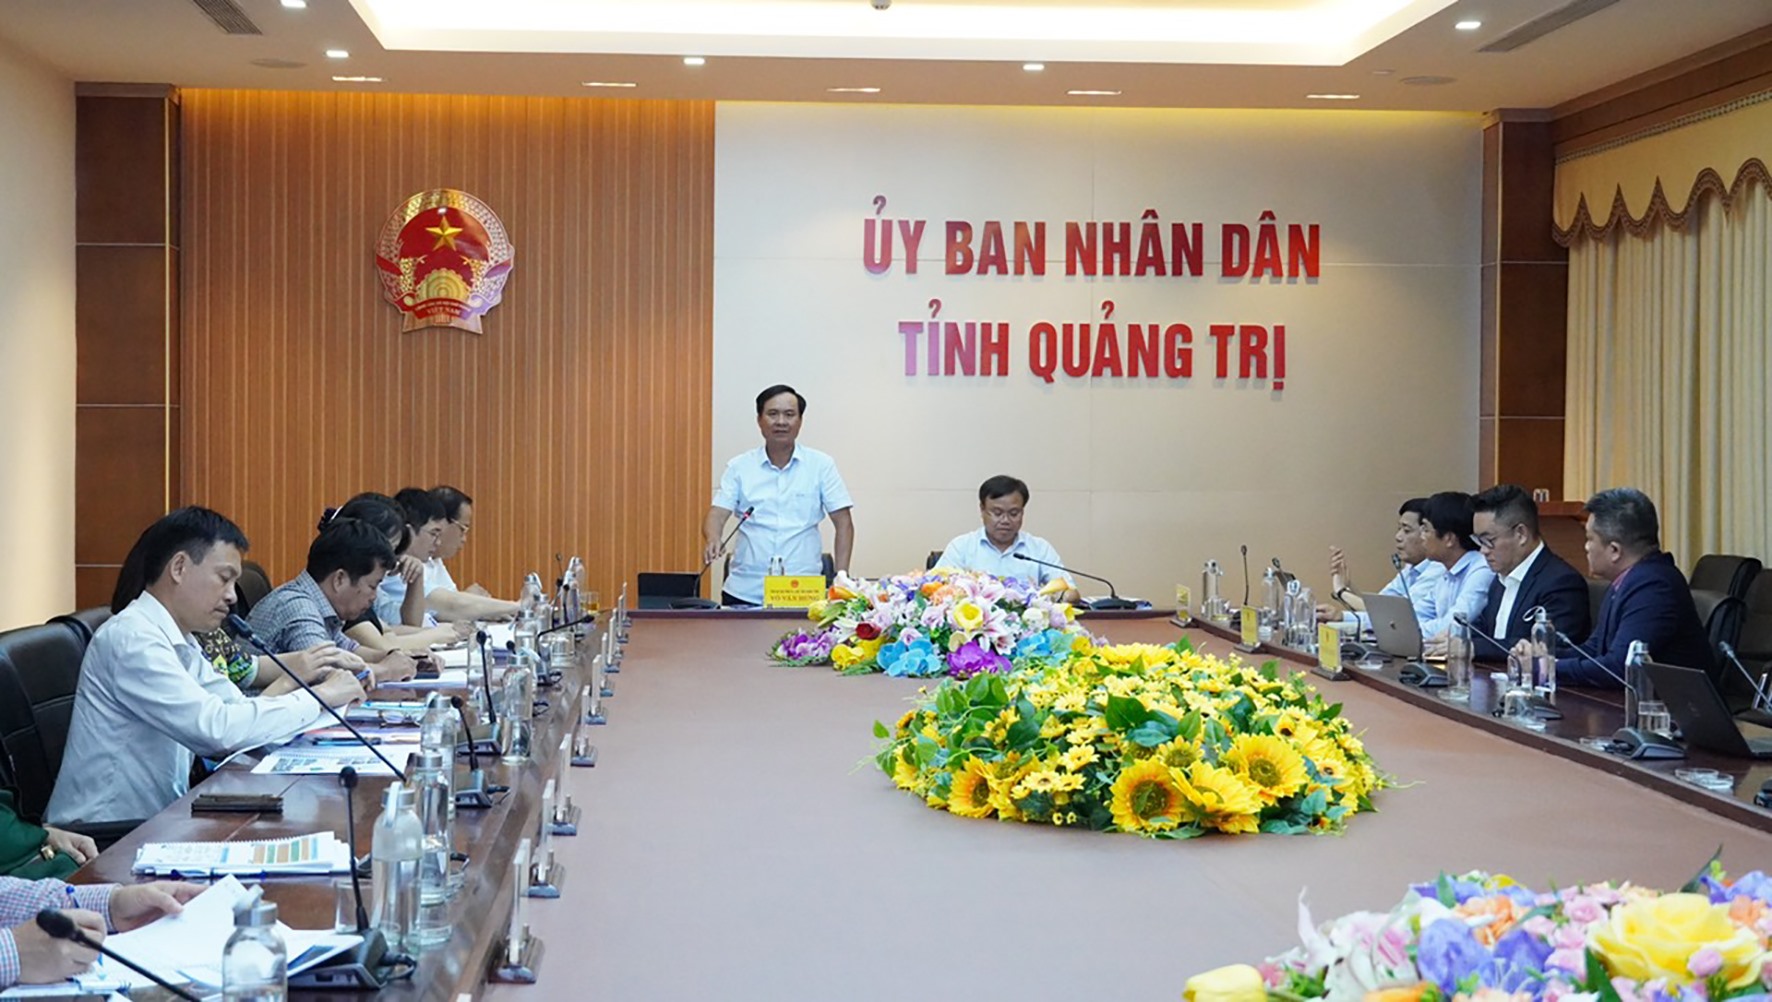 Chủ tịch UBND tỉnh Võ Văn Hưng đề nghị nhà đầu tư dự án Khu bến cảng Mỹ Thủy đảm bảo dự án được thực hiện thông suốt, hiệu quả, đúng cam kết - Ảnh: Lê Minh